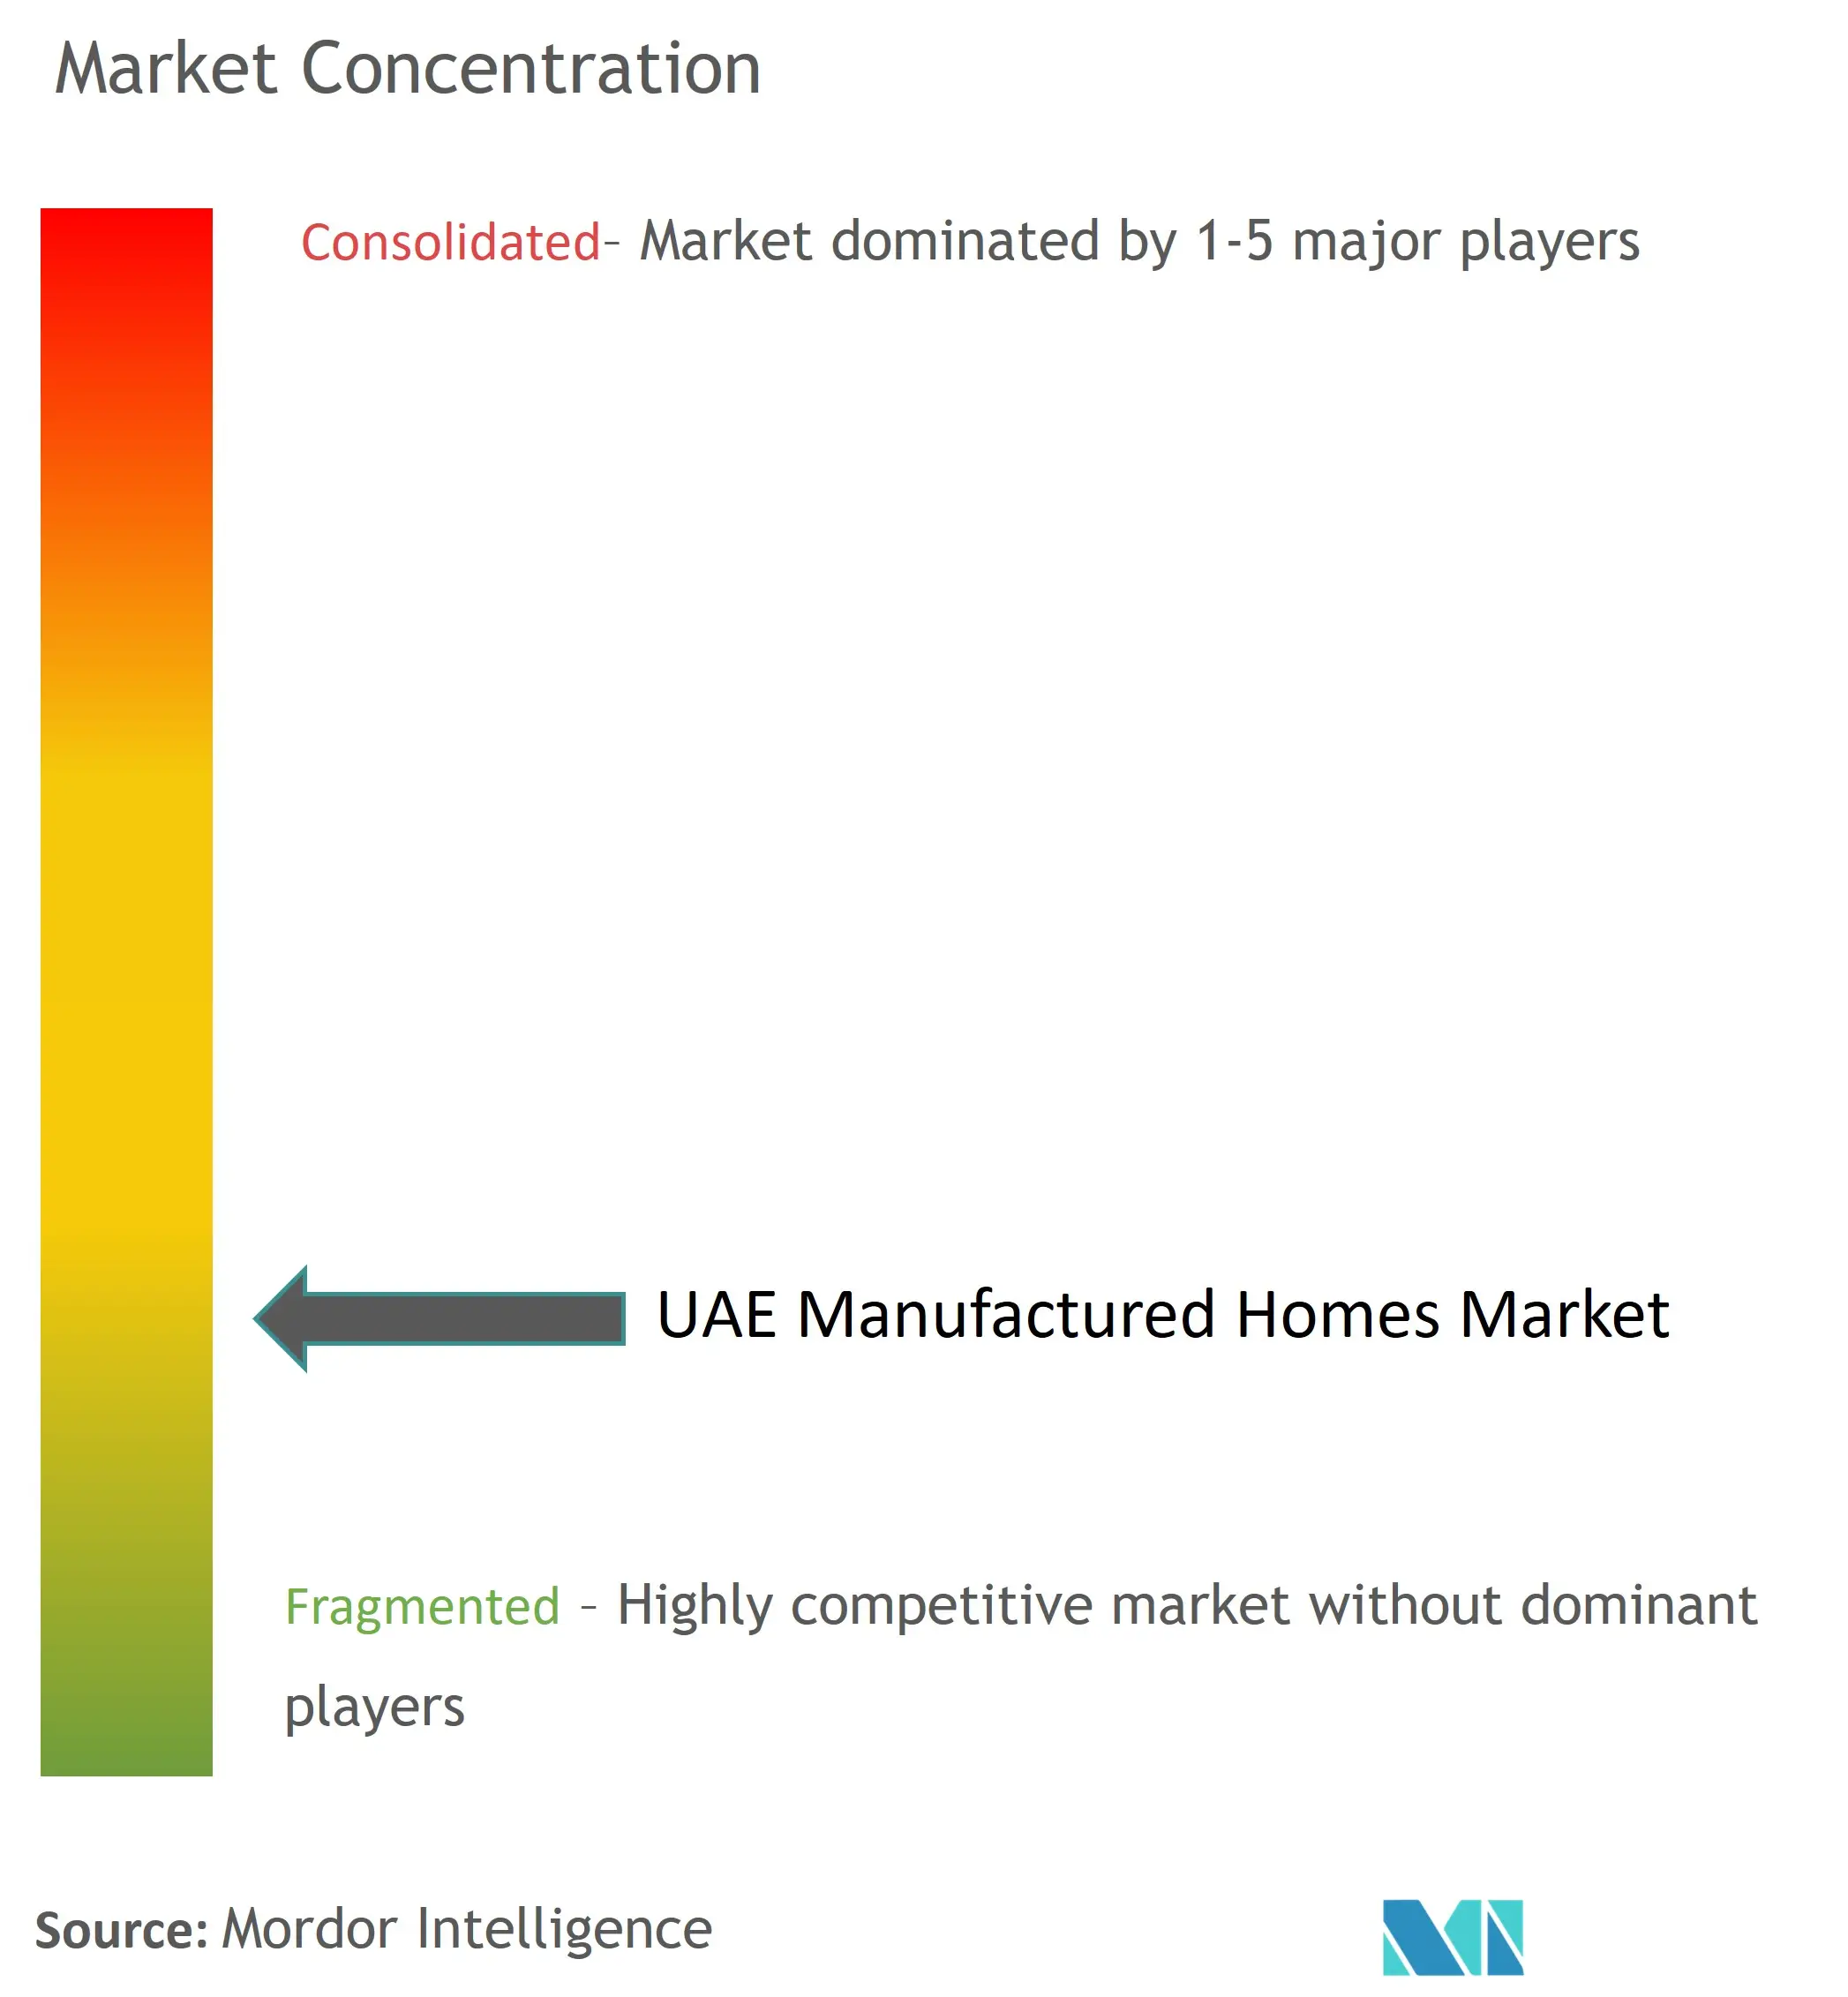 アラブ首長国連邦の製造住宅市場の集中